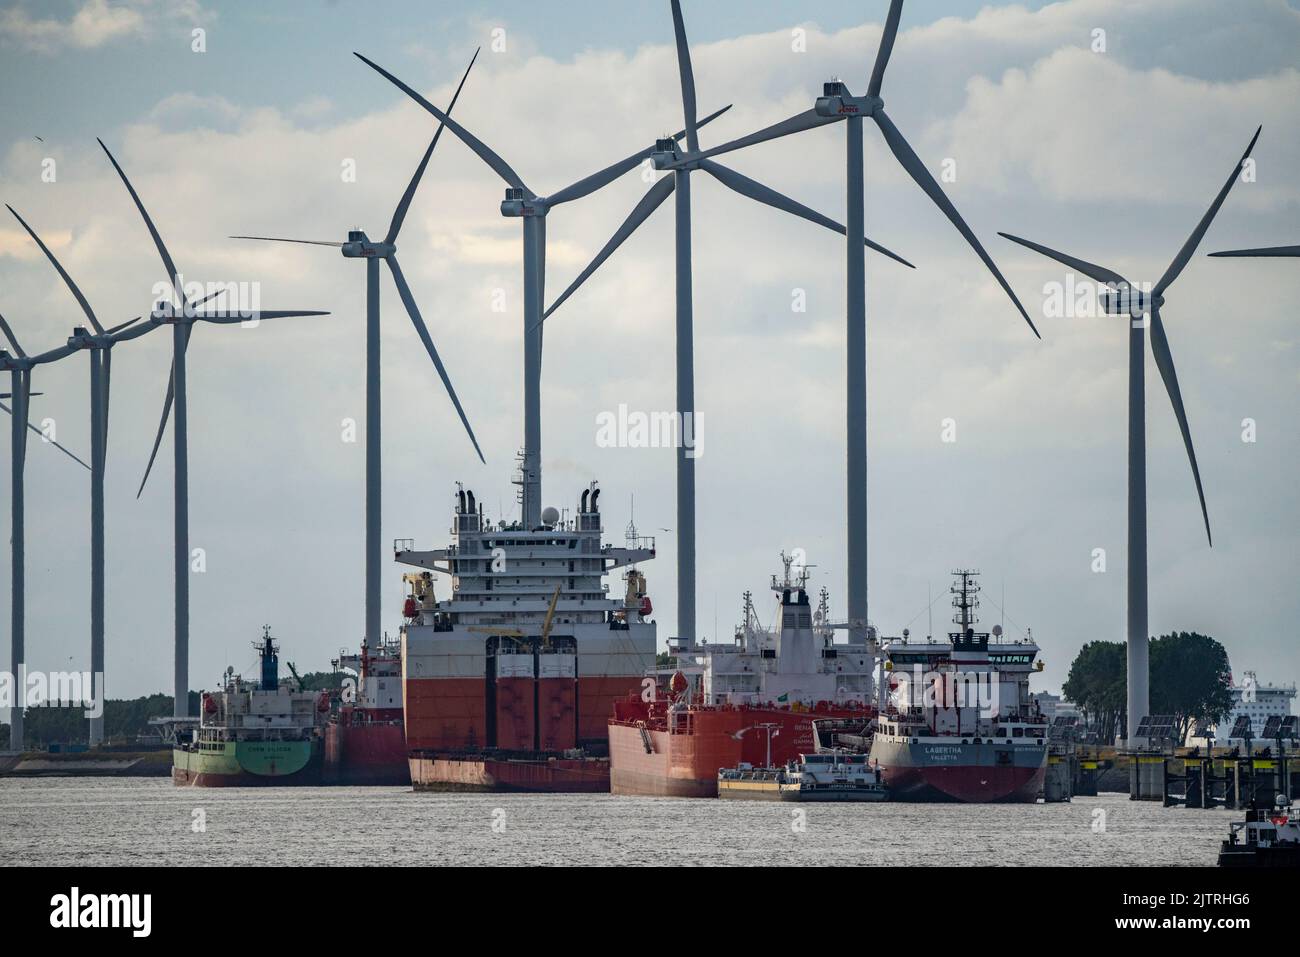 Petroleumhaven, petroliere in attesa di nuove operazioni di carico presso il porto di Europoort, la centrale eolica, di Rotterdam, Paesi Bassi, Foto Stock